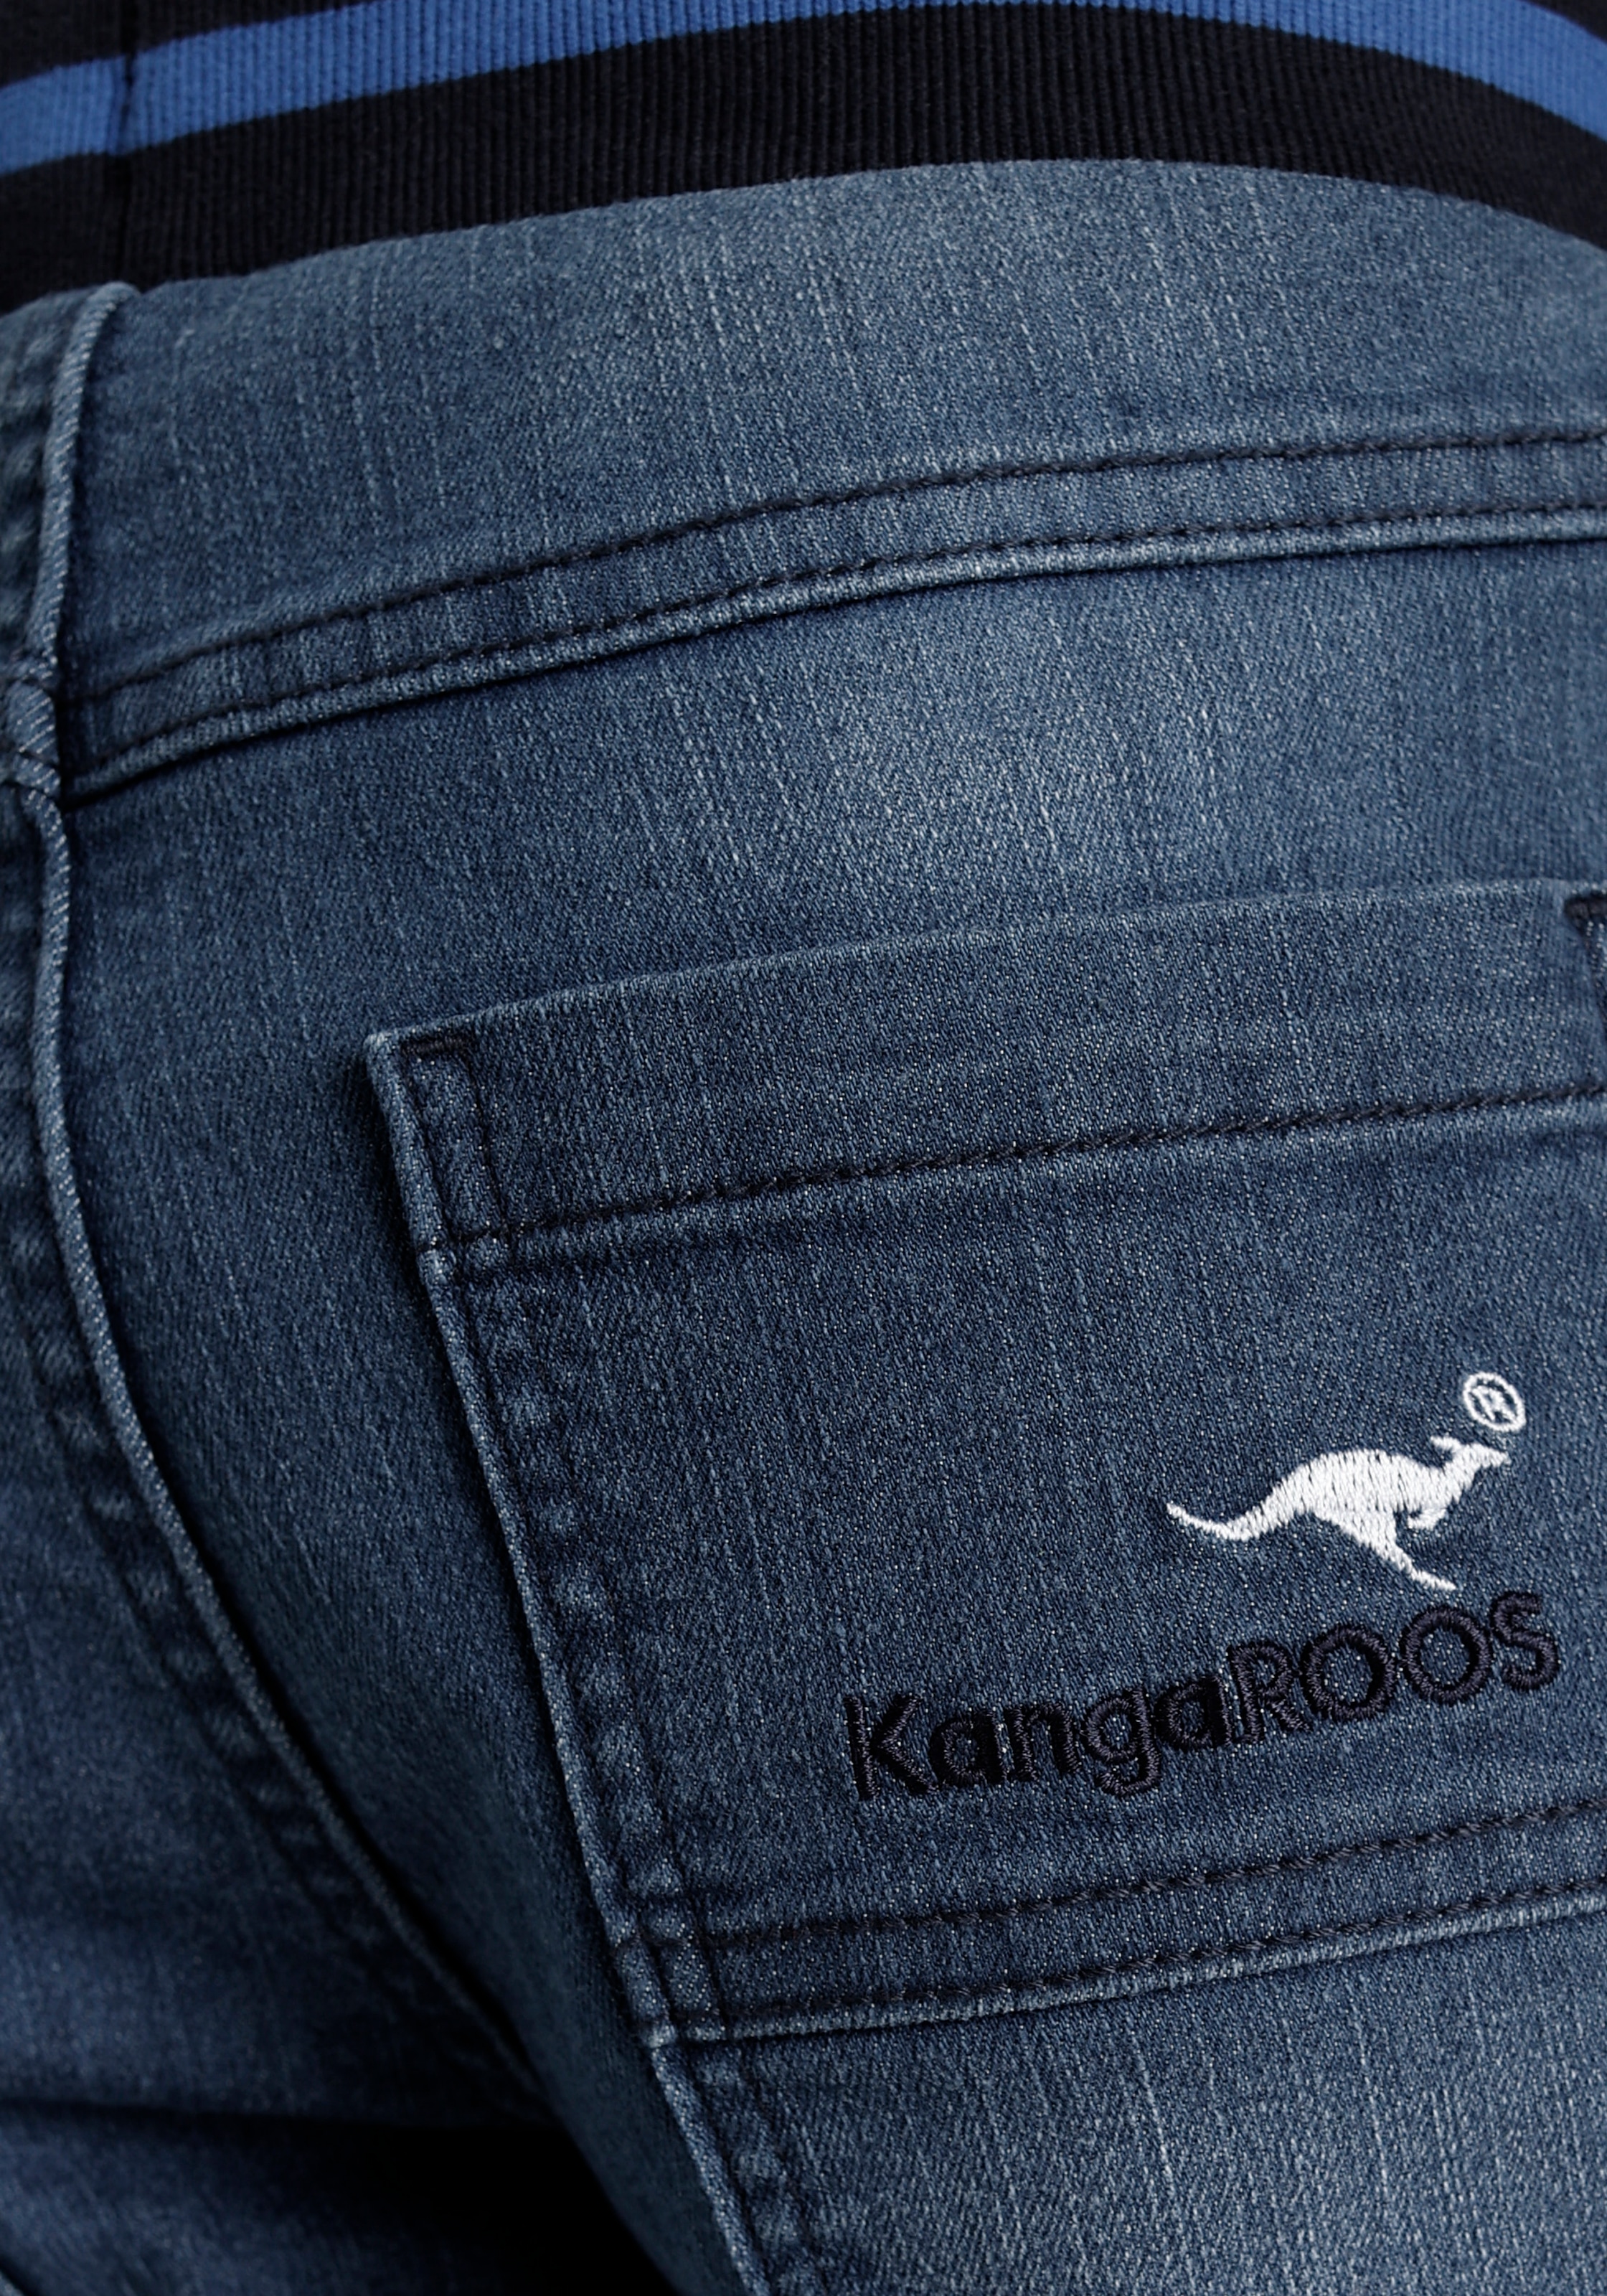 KangaROOS Stretch-Jeans »für Jungen«, in authentischer Waschung